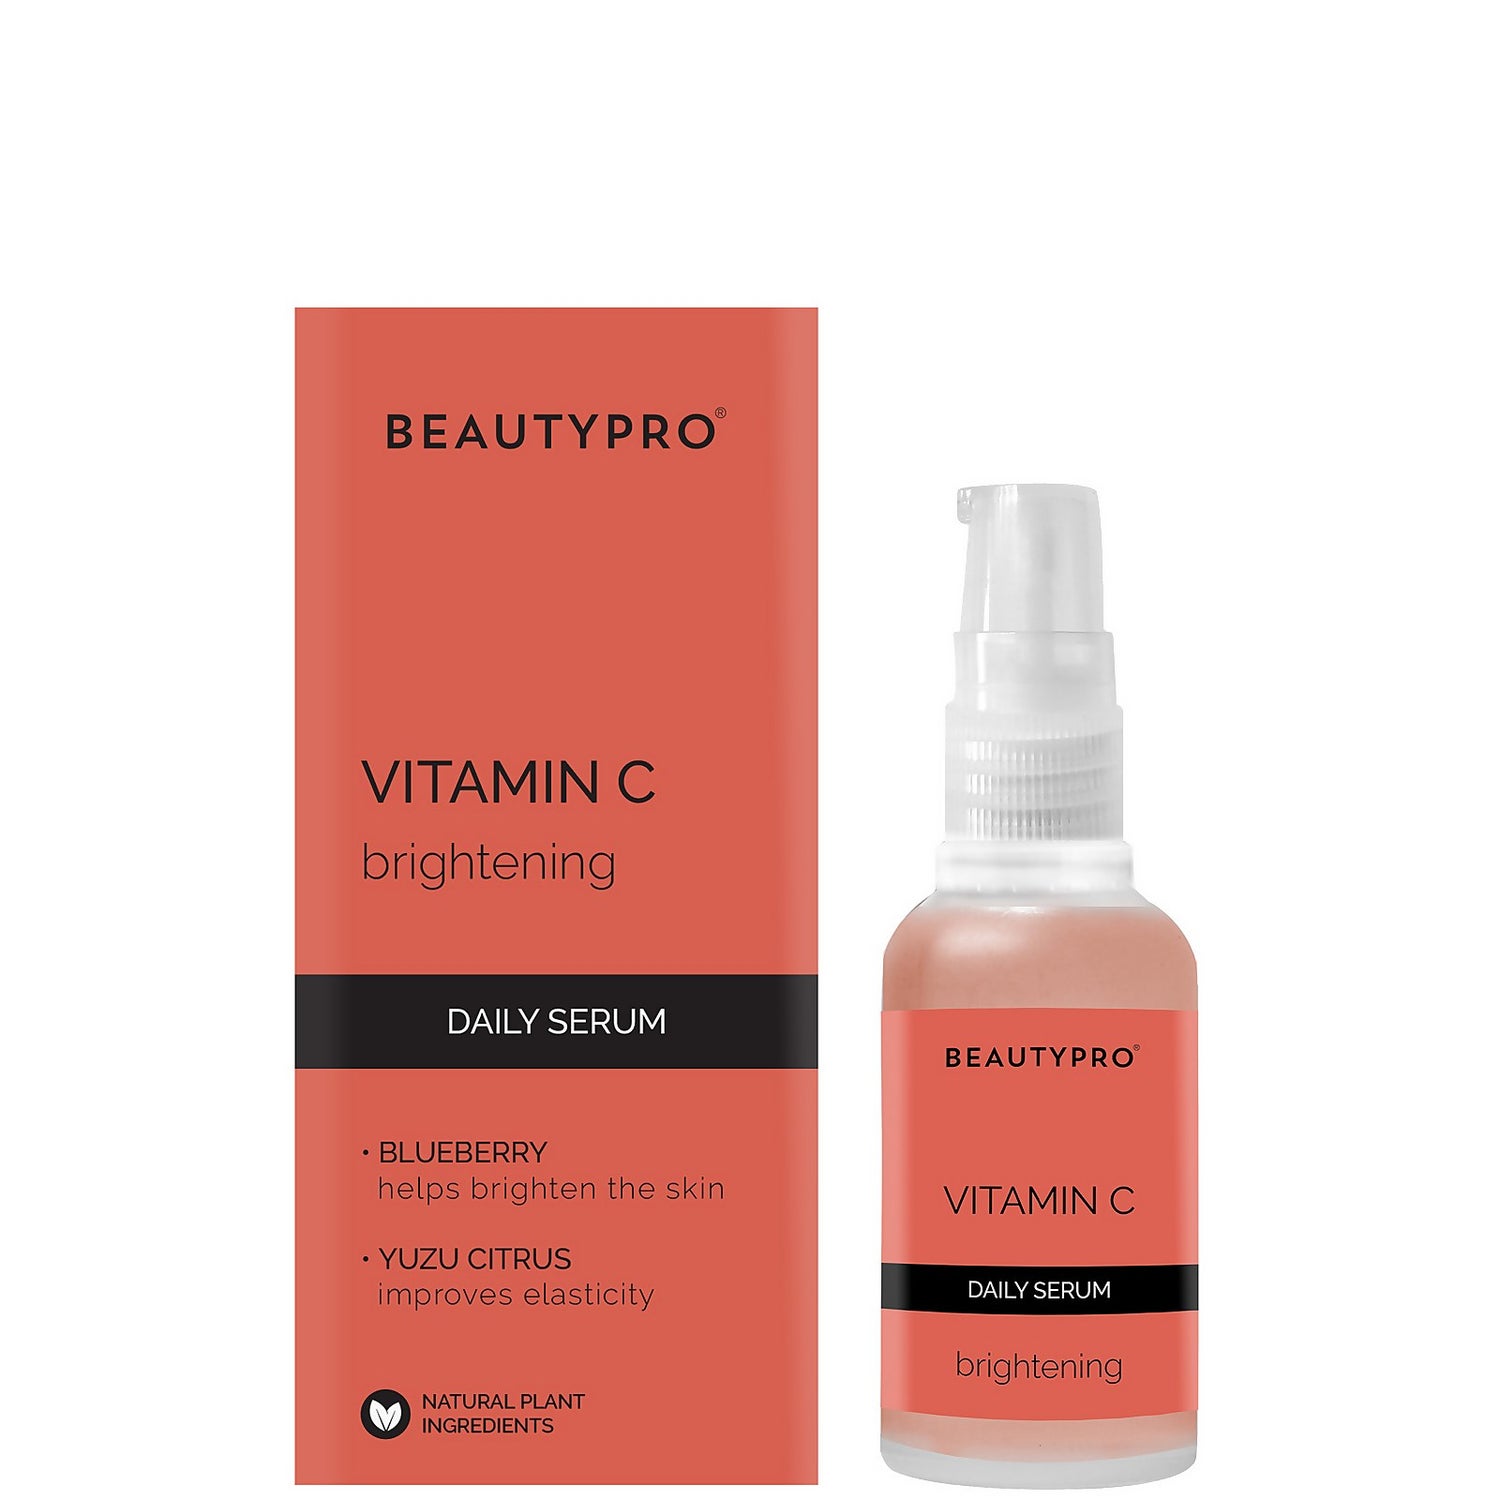 BeautyPro Brightening 10% Vitamin-C Daily Serum 30ml